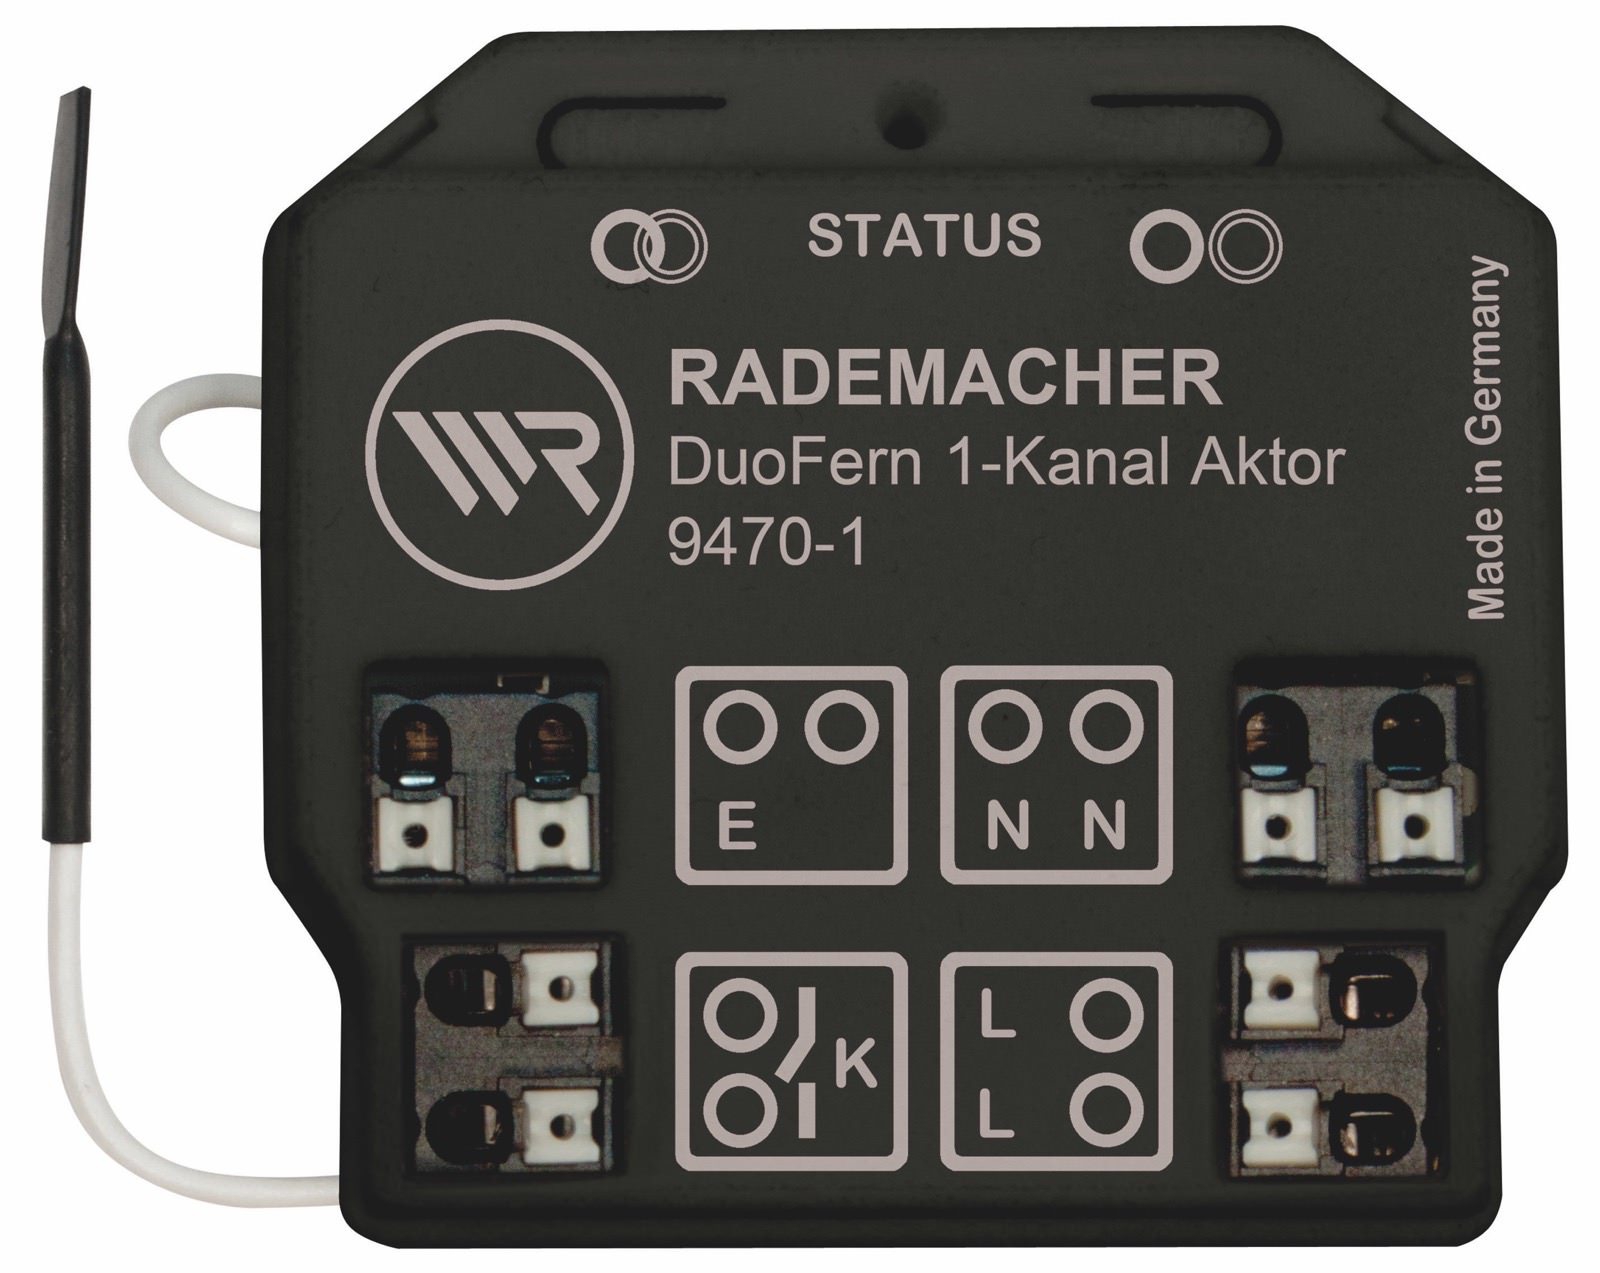 Rademacher DuoFern Universal-Aktor 9470-1 | 1-Kanal Unterputz Funkempfänger